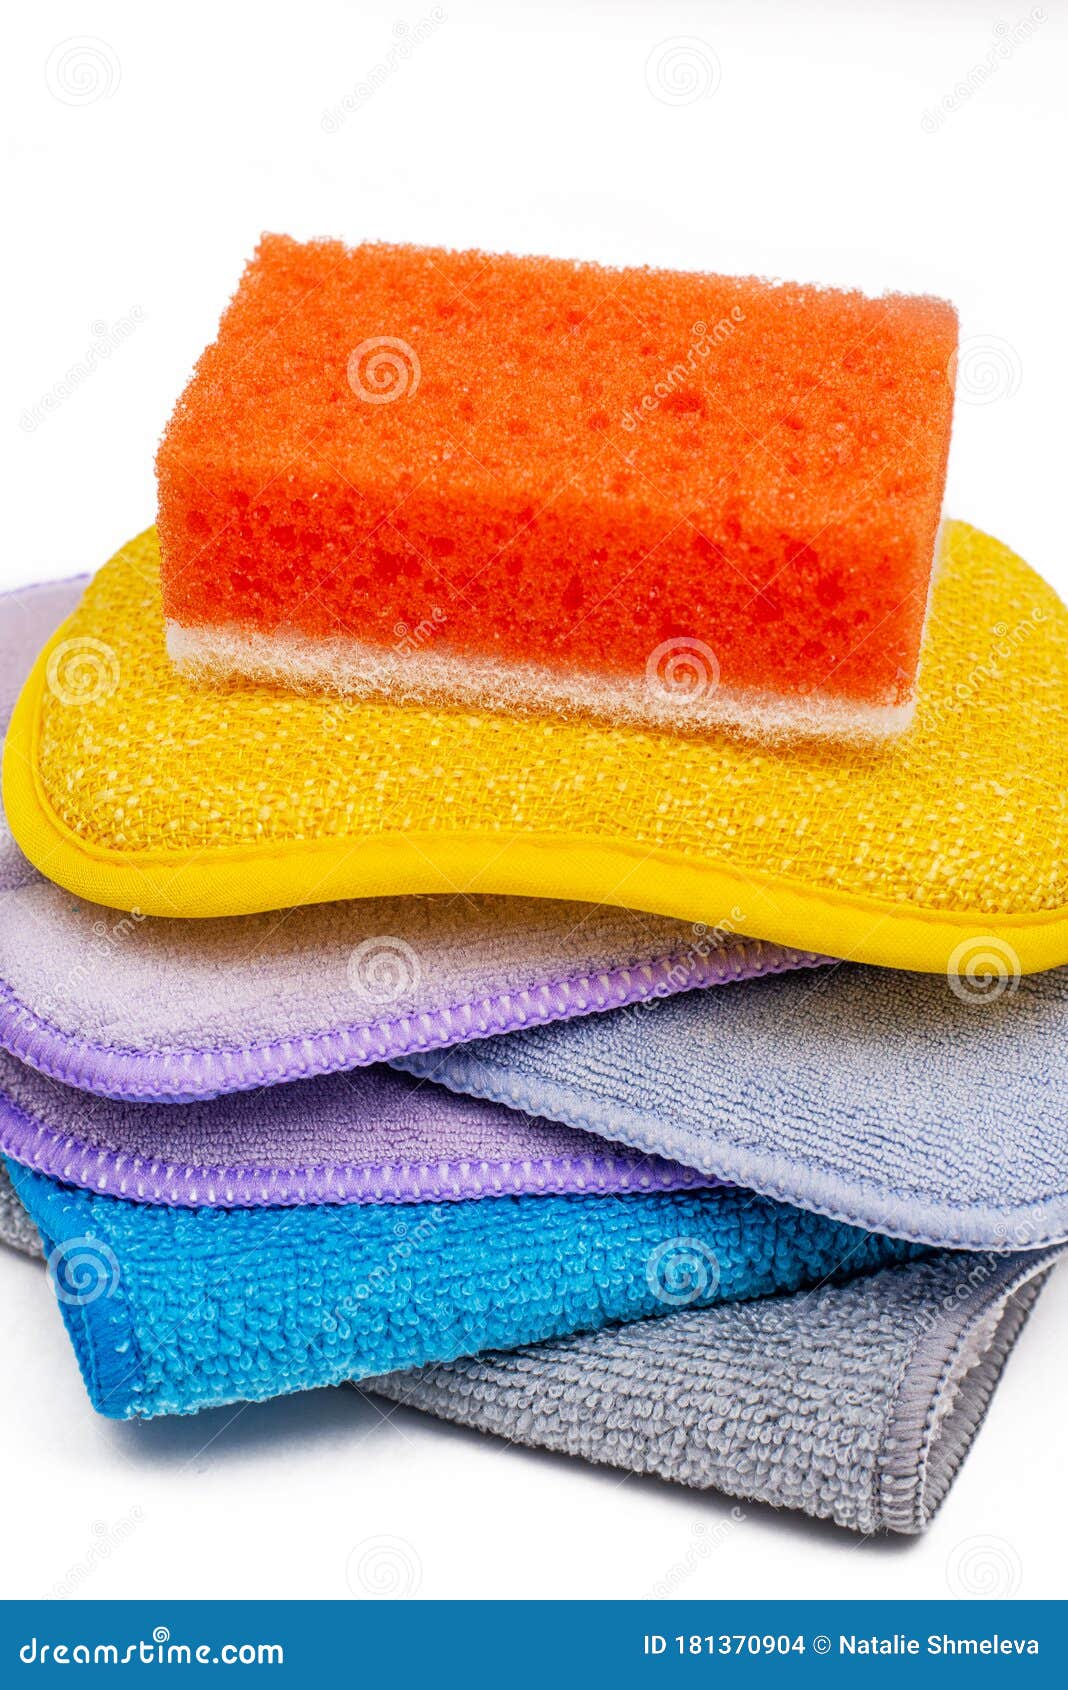 https://thumbs.dreamstime.com/z/esponja-para-lavar-platos-conjunto-de-pa%C3%B1os-y-esponjas-colores-la-limpieza-lavado-aislados-en-fondo-blanco-181370904.jpg